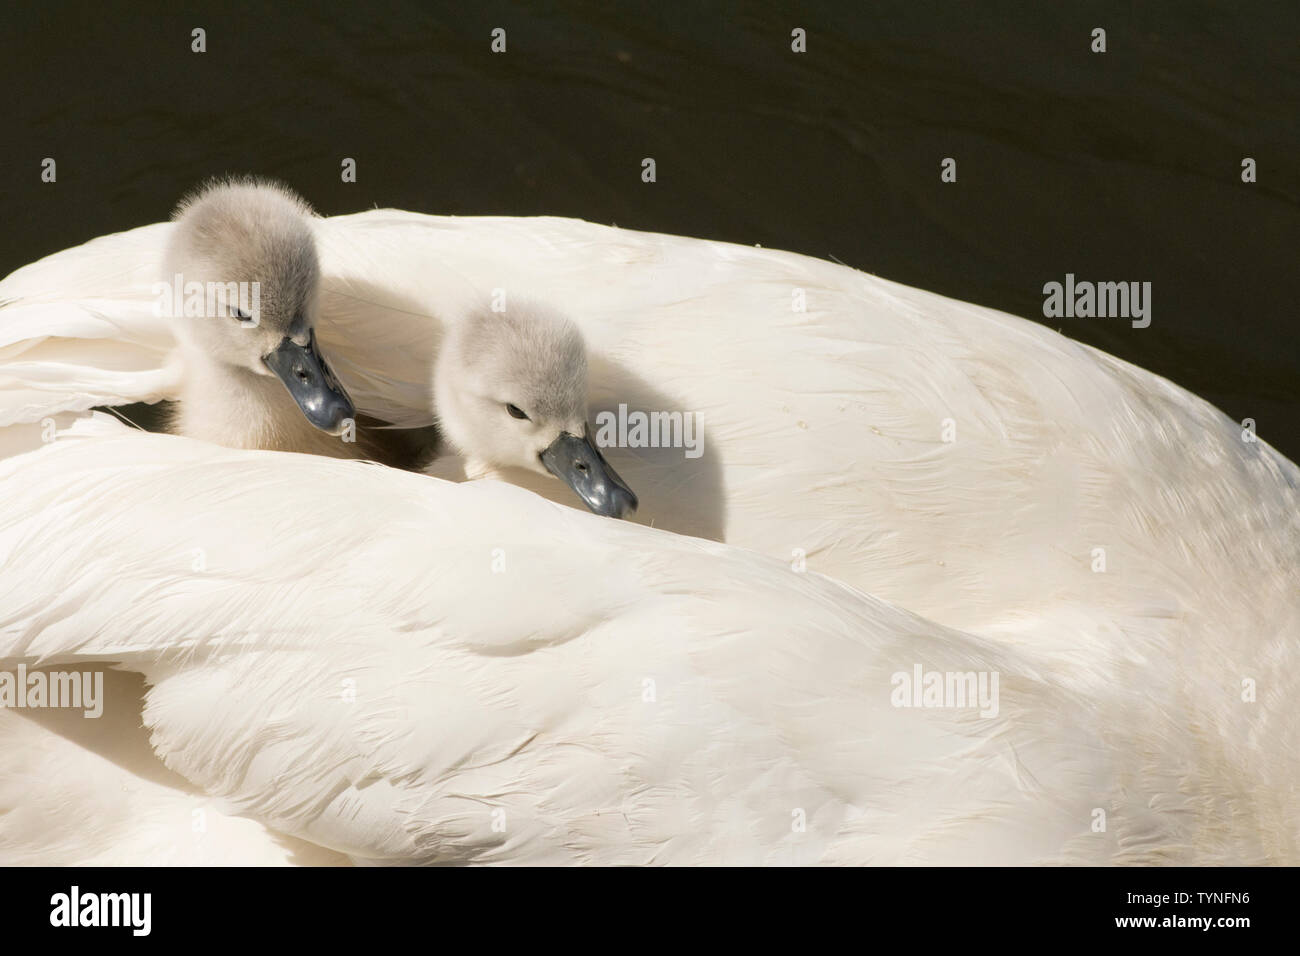 Piume di cigno immagini e fotografie stock ad alta risoluzione - Alamy